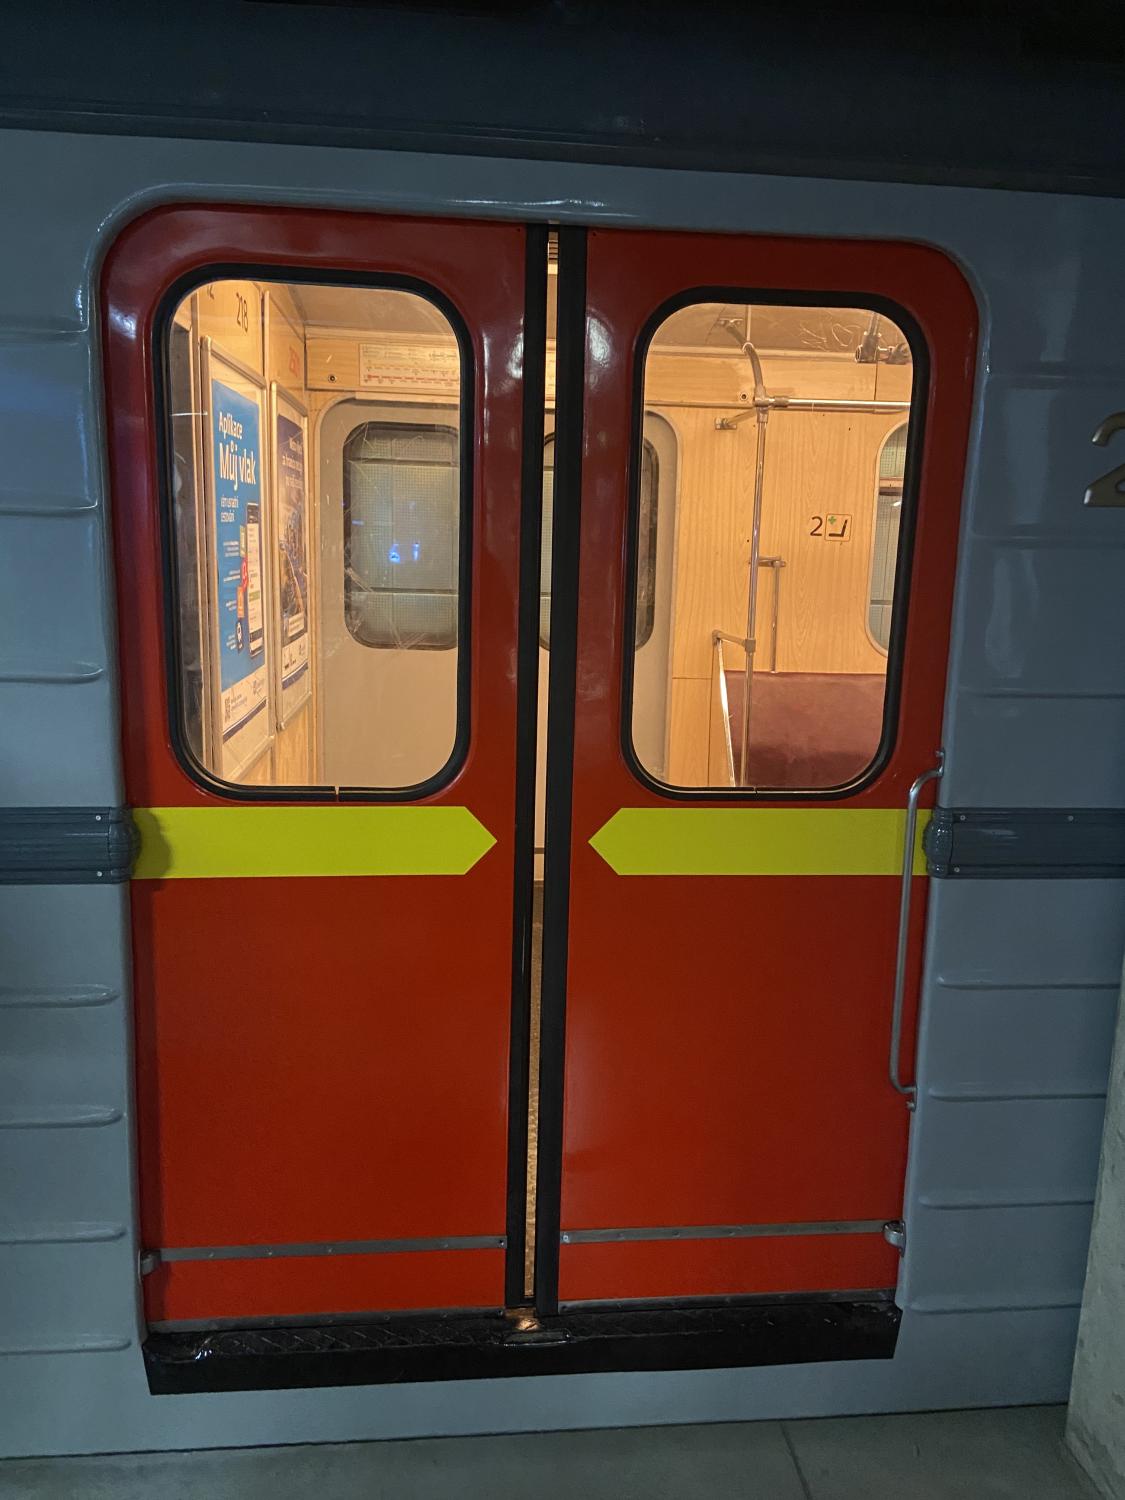 Království železnic dosáhlo milníku! Nově návštěvníci mohou nasednout do pražského metra